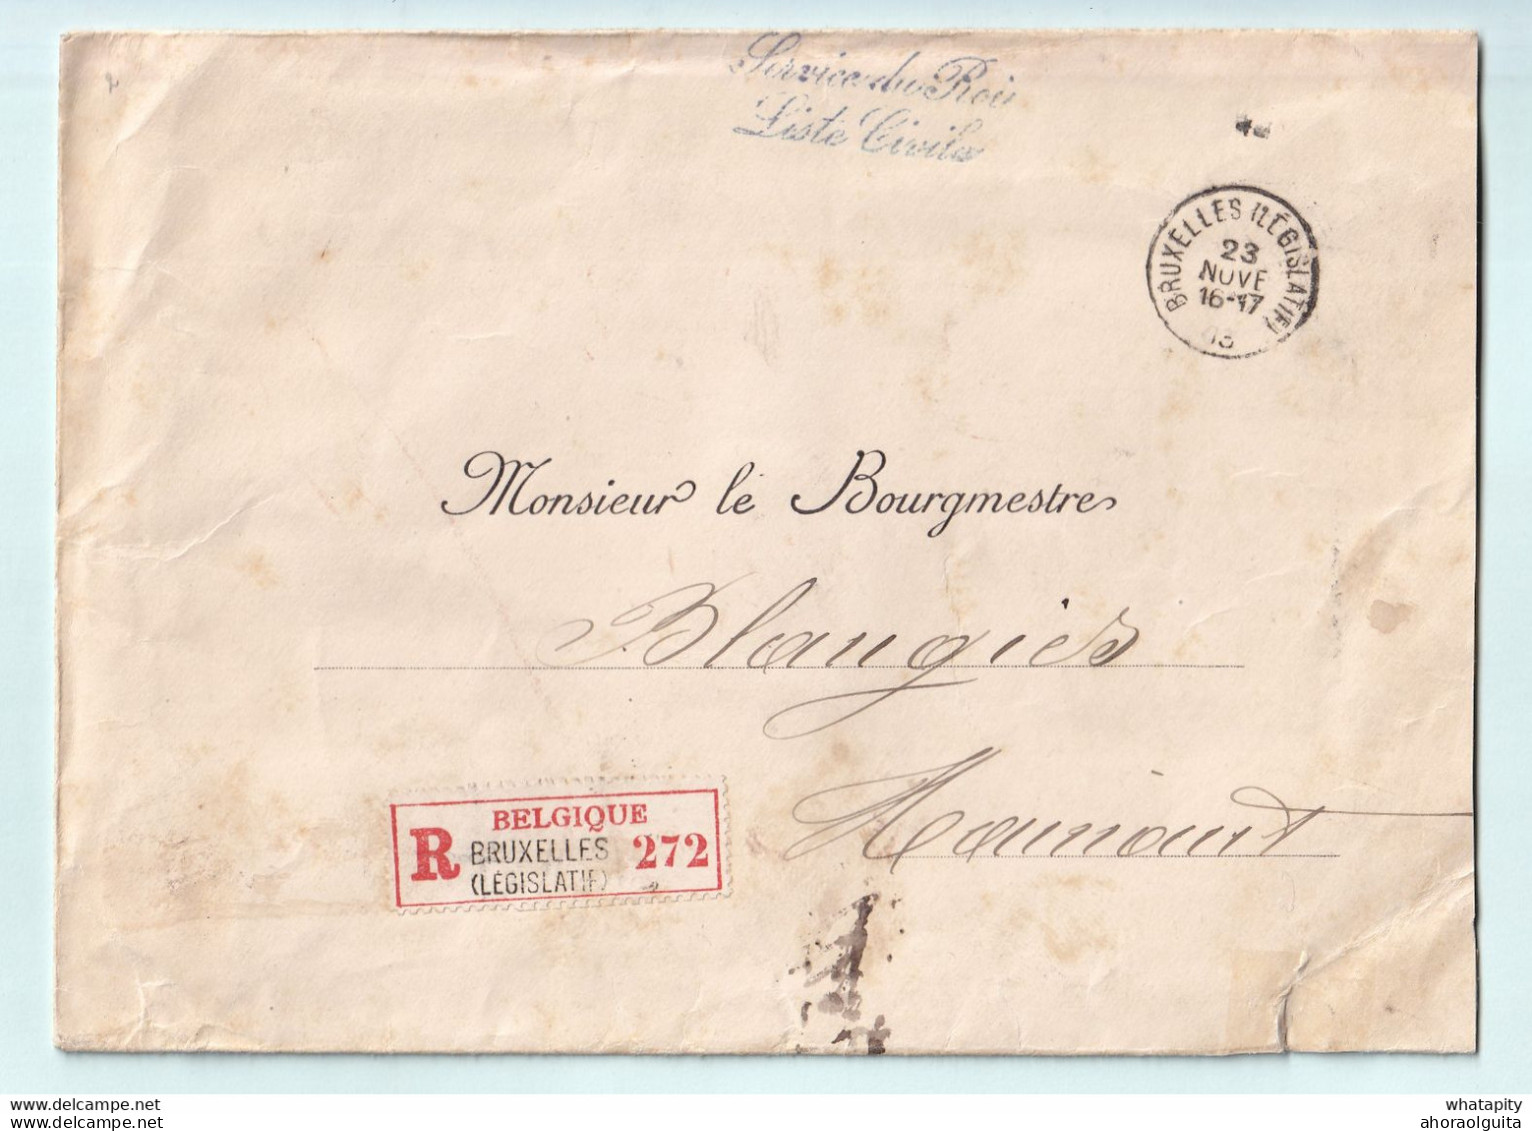 192/38 -- Les RECOMMANDES - Enveloppe En FRANCHISE TOTALE Bruxelles 1903 - Service Du Roi , Liste Civile - Franchise